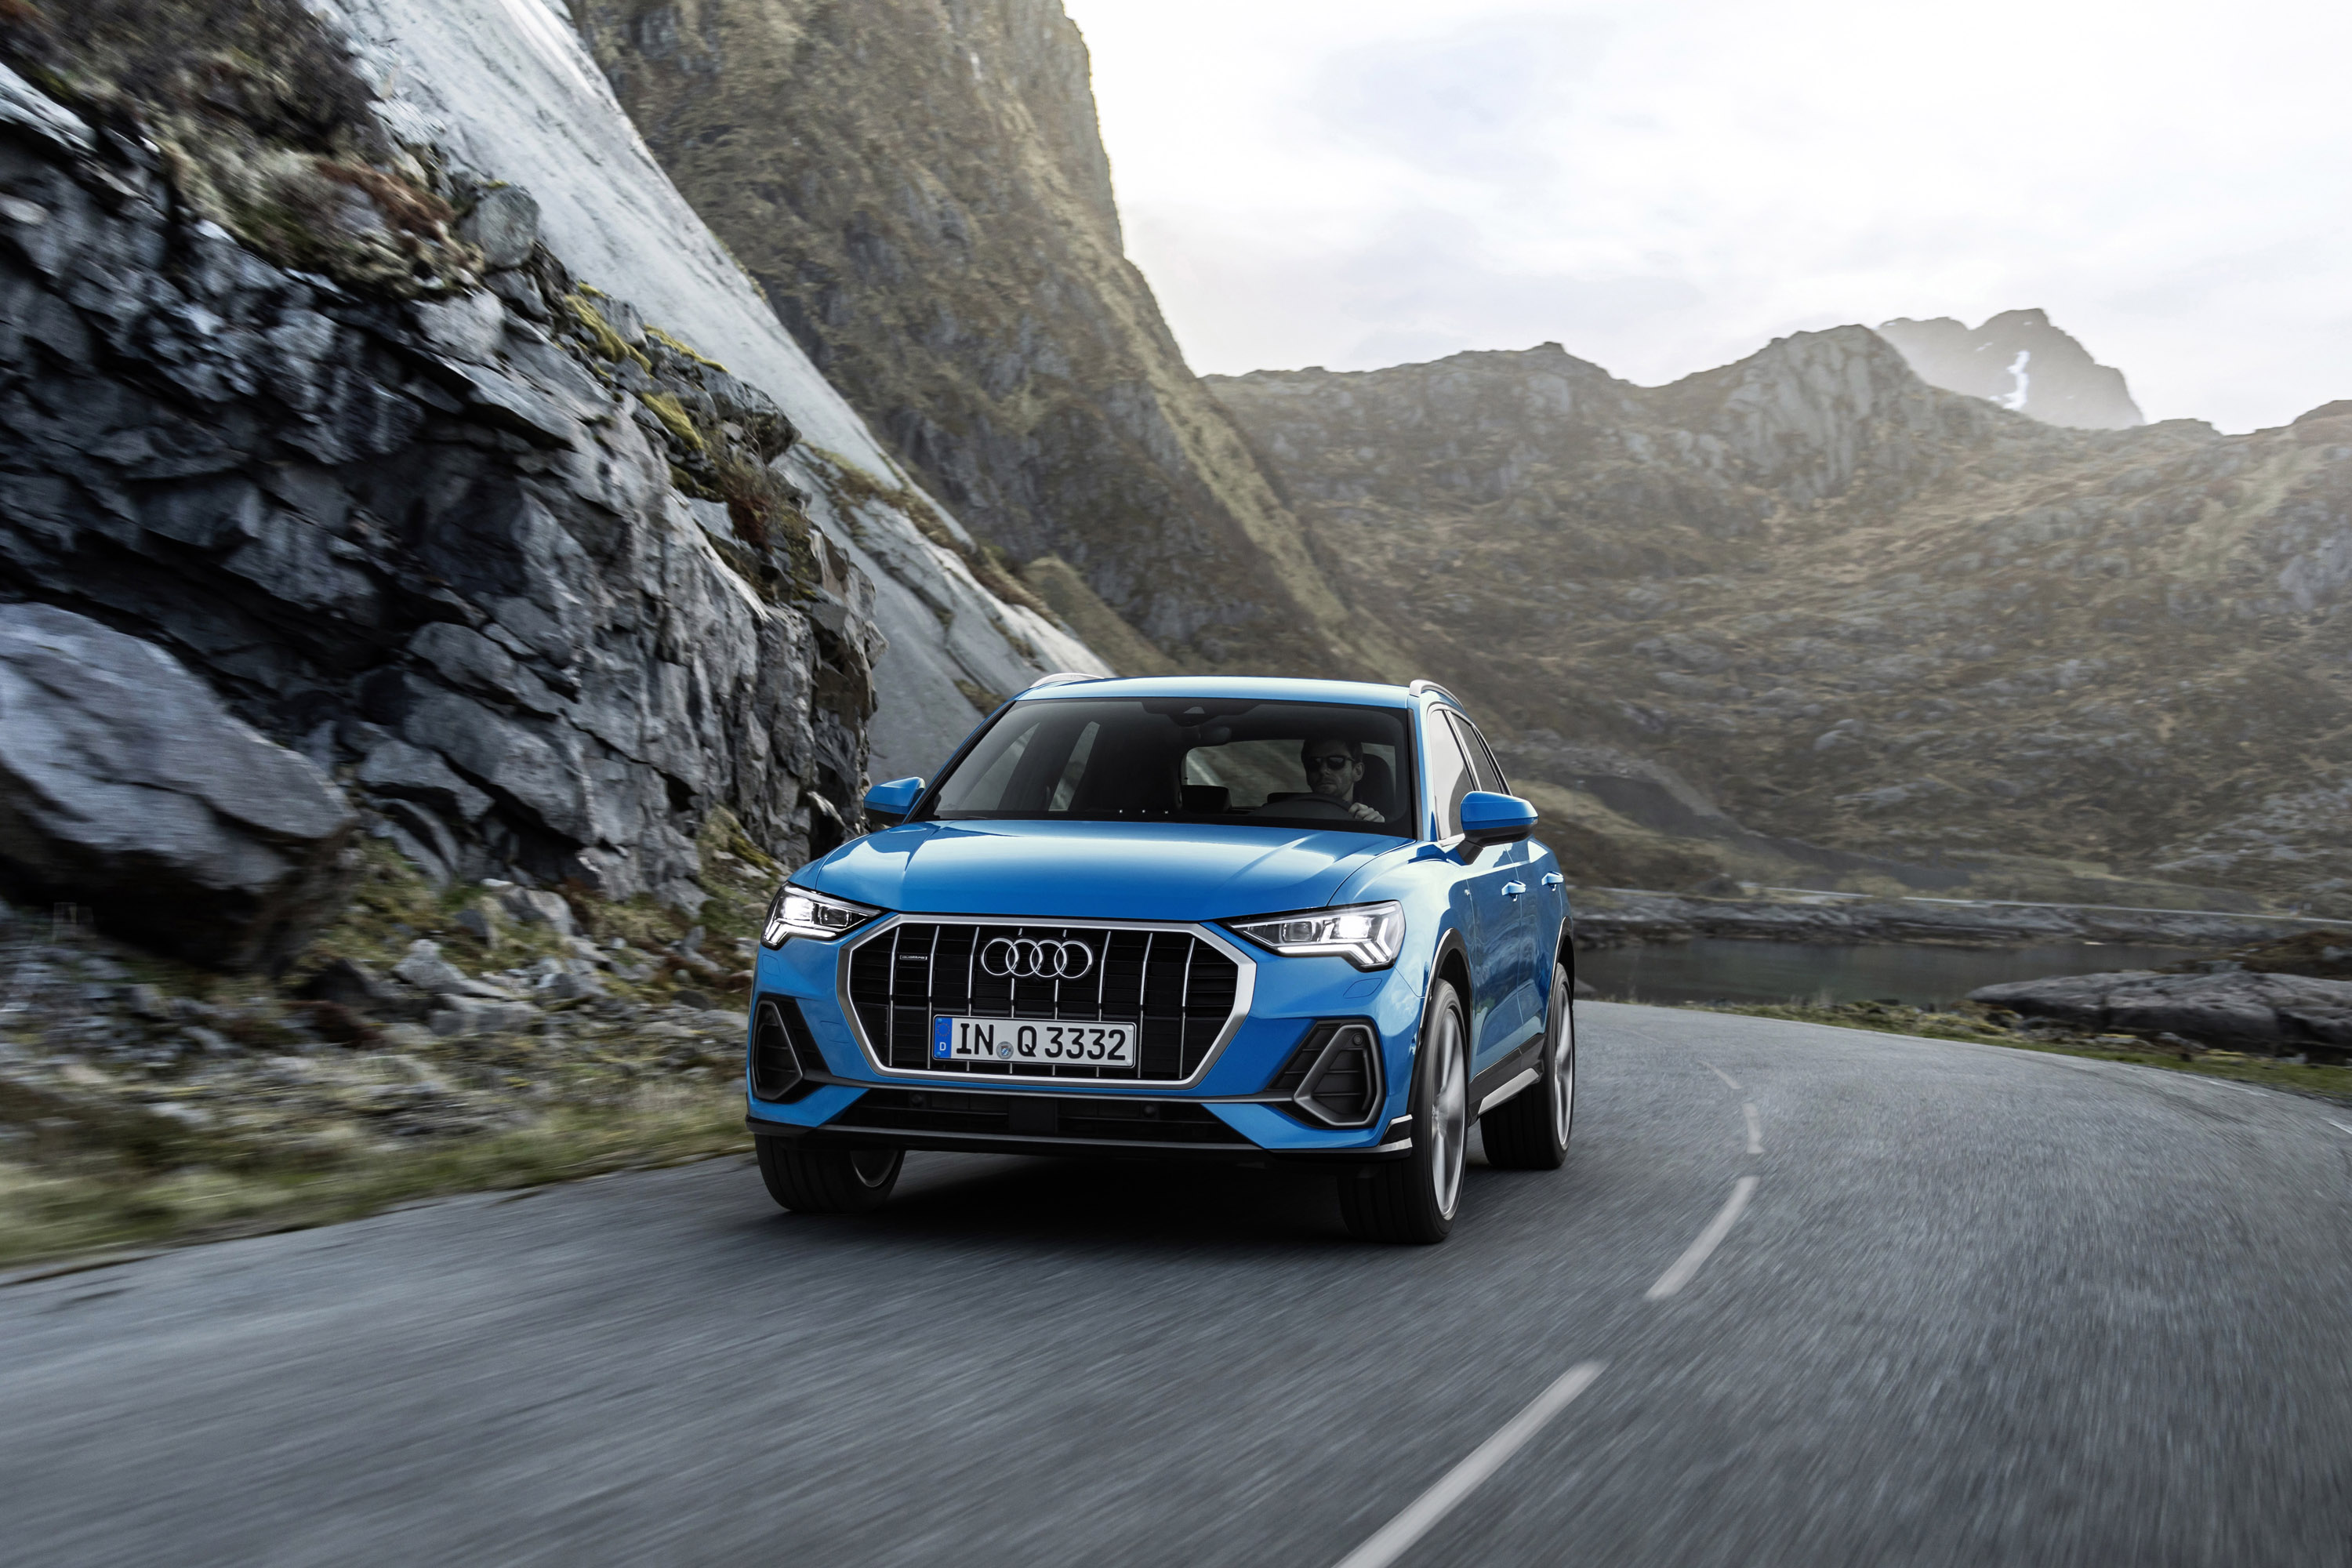 Audi предлагает новый Q3 с четырьмя вариантами двигателей - тремя бензиновыми и одним дизельным агрегатом в сочетании с полным или передним приводом. Общая выходная мощность варьируется от 150 до 230 л.с., в зависимости от трансмиссии. Кроме того, вс